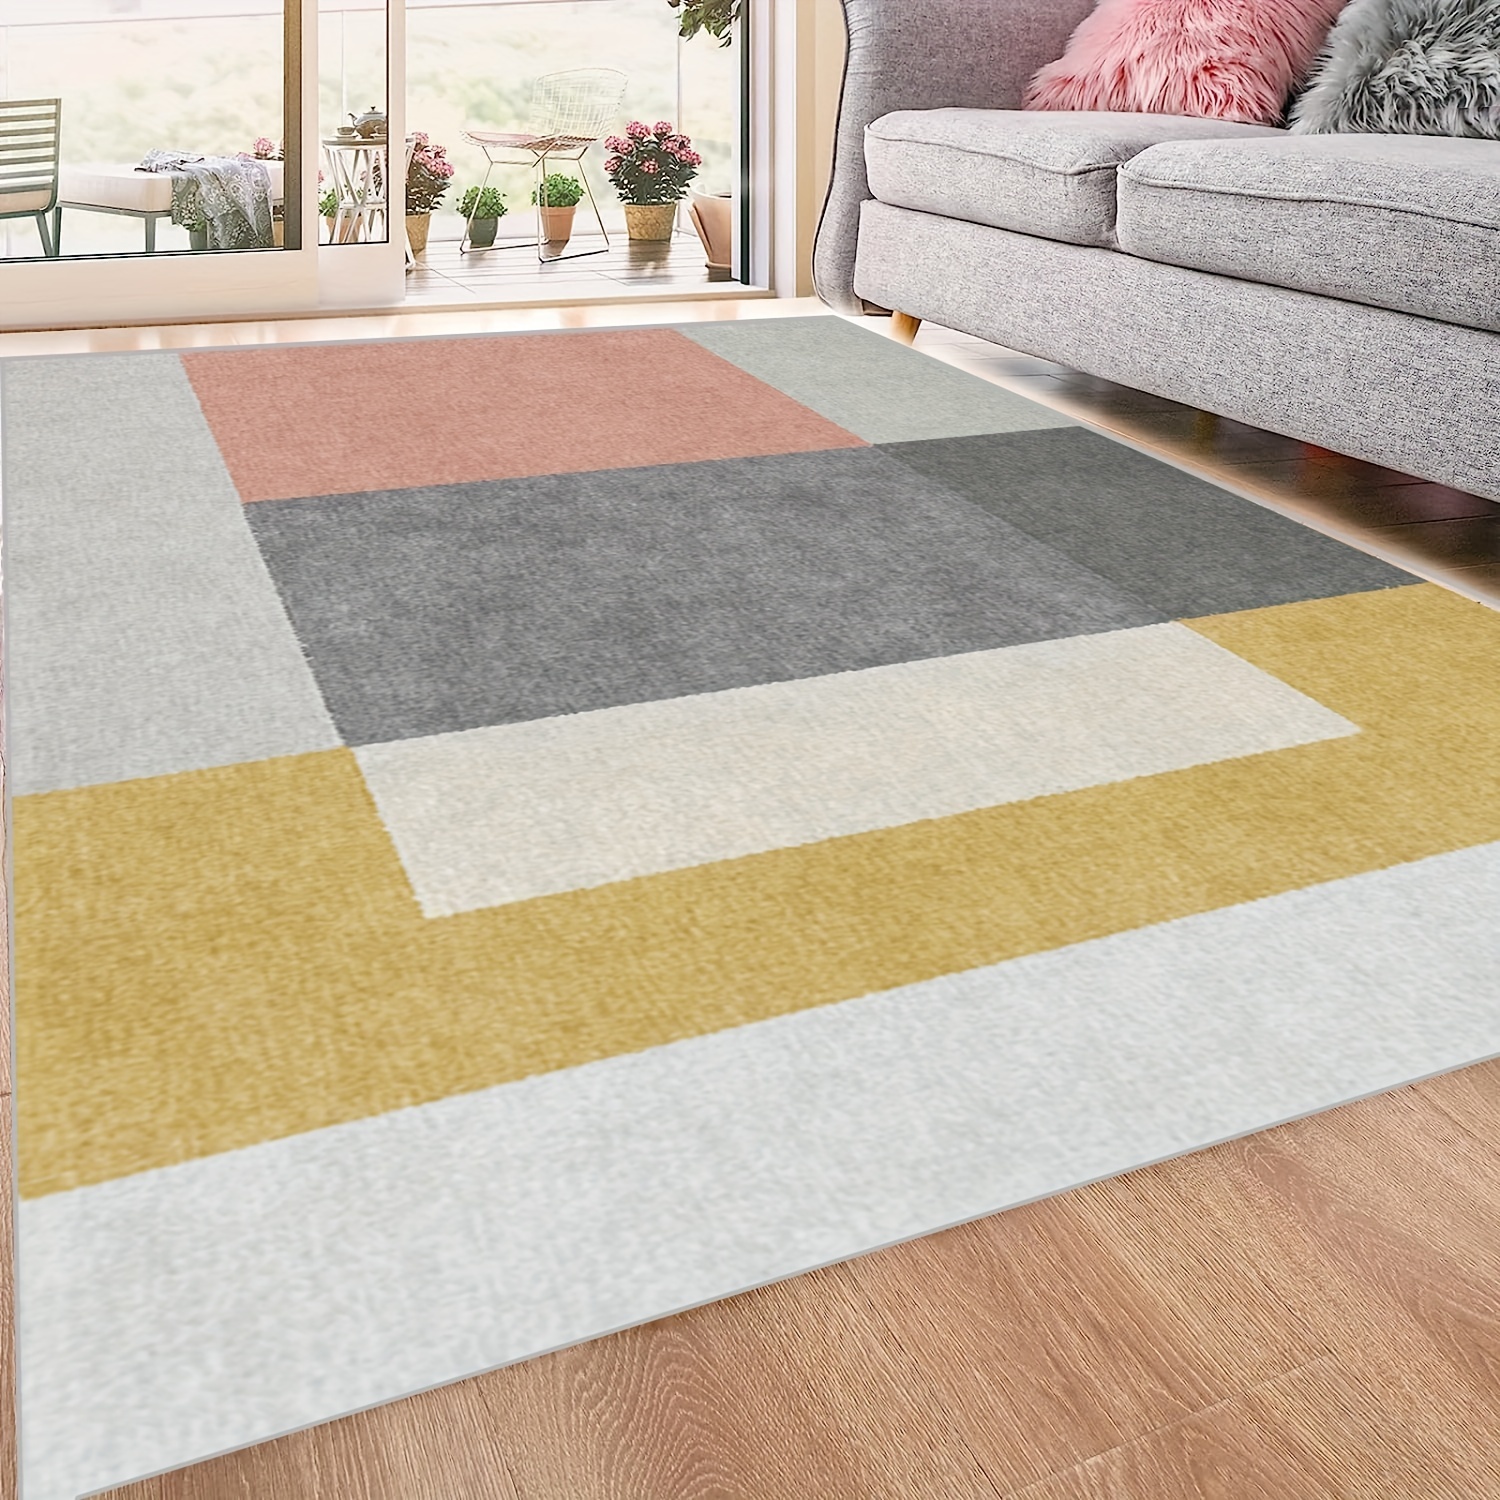 Modern Large Area Rugs Living Room Bedroom Carpet Soft Floor Mat Rug Non  Slip